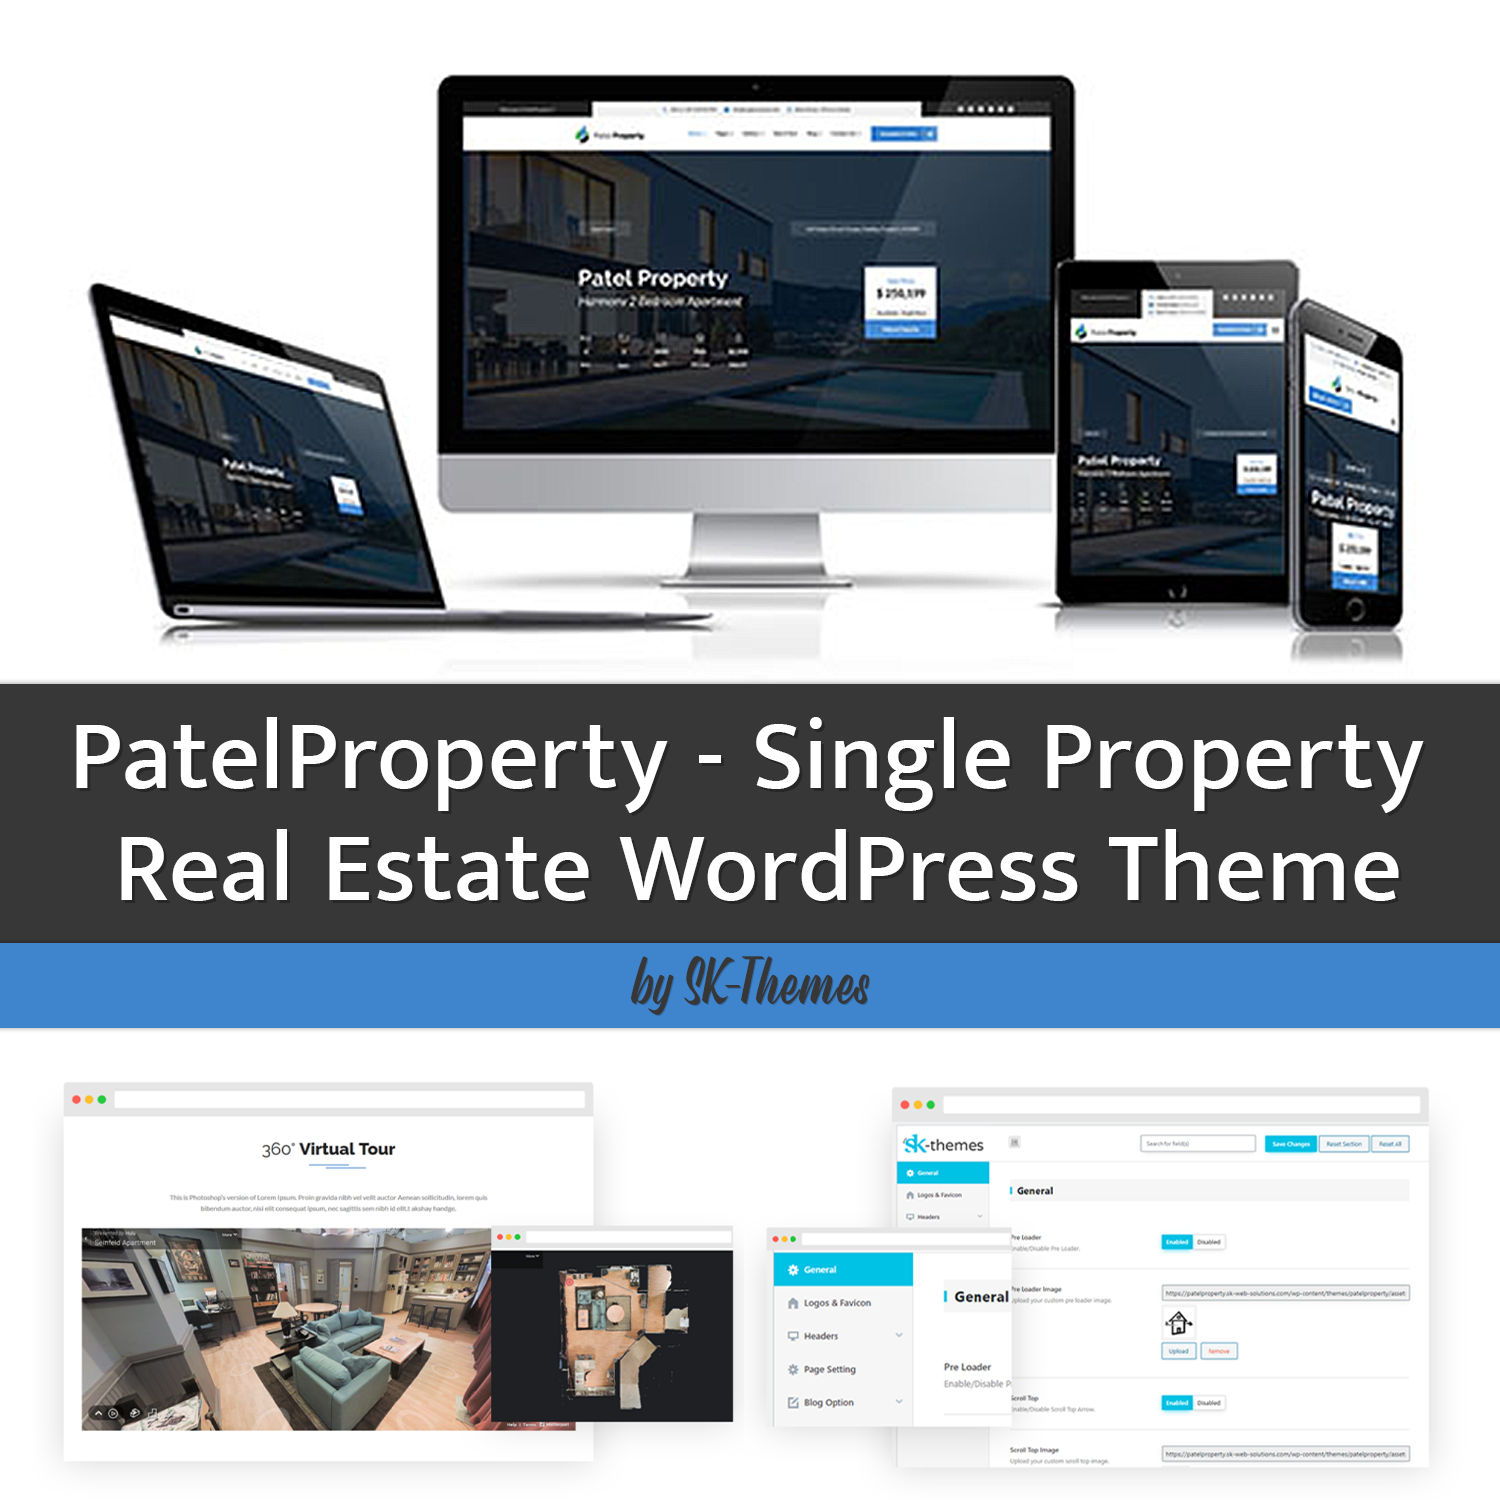 Preview patelproperty single property real estate wordpress theme.